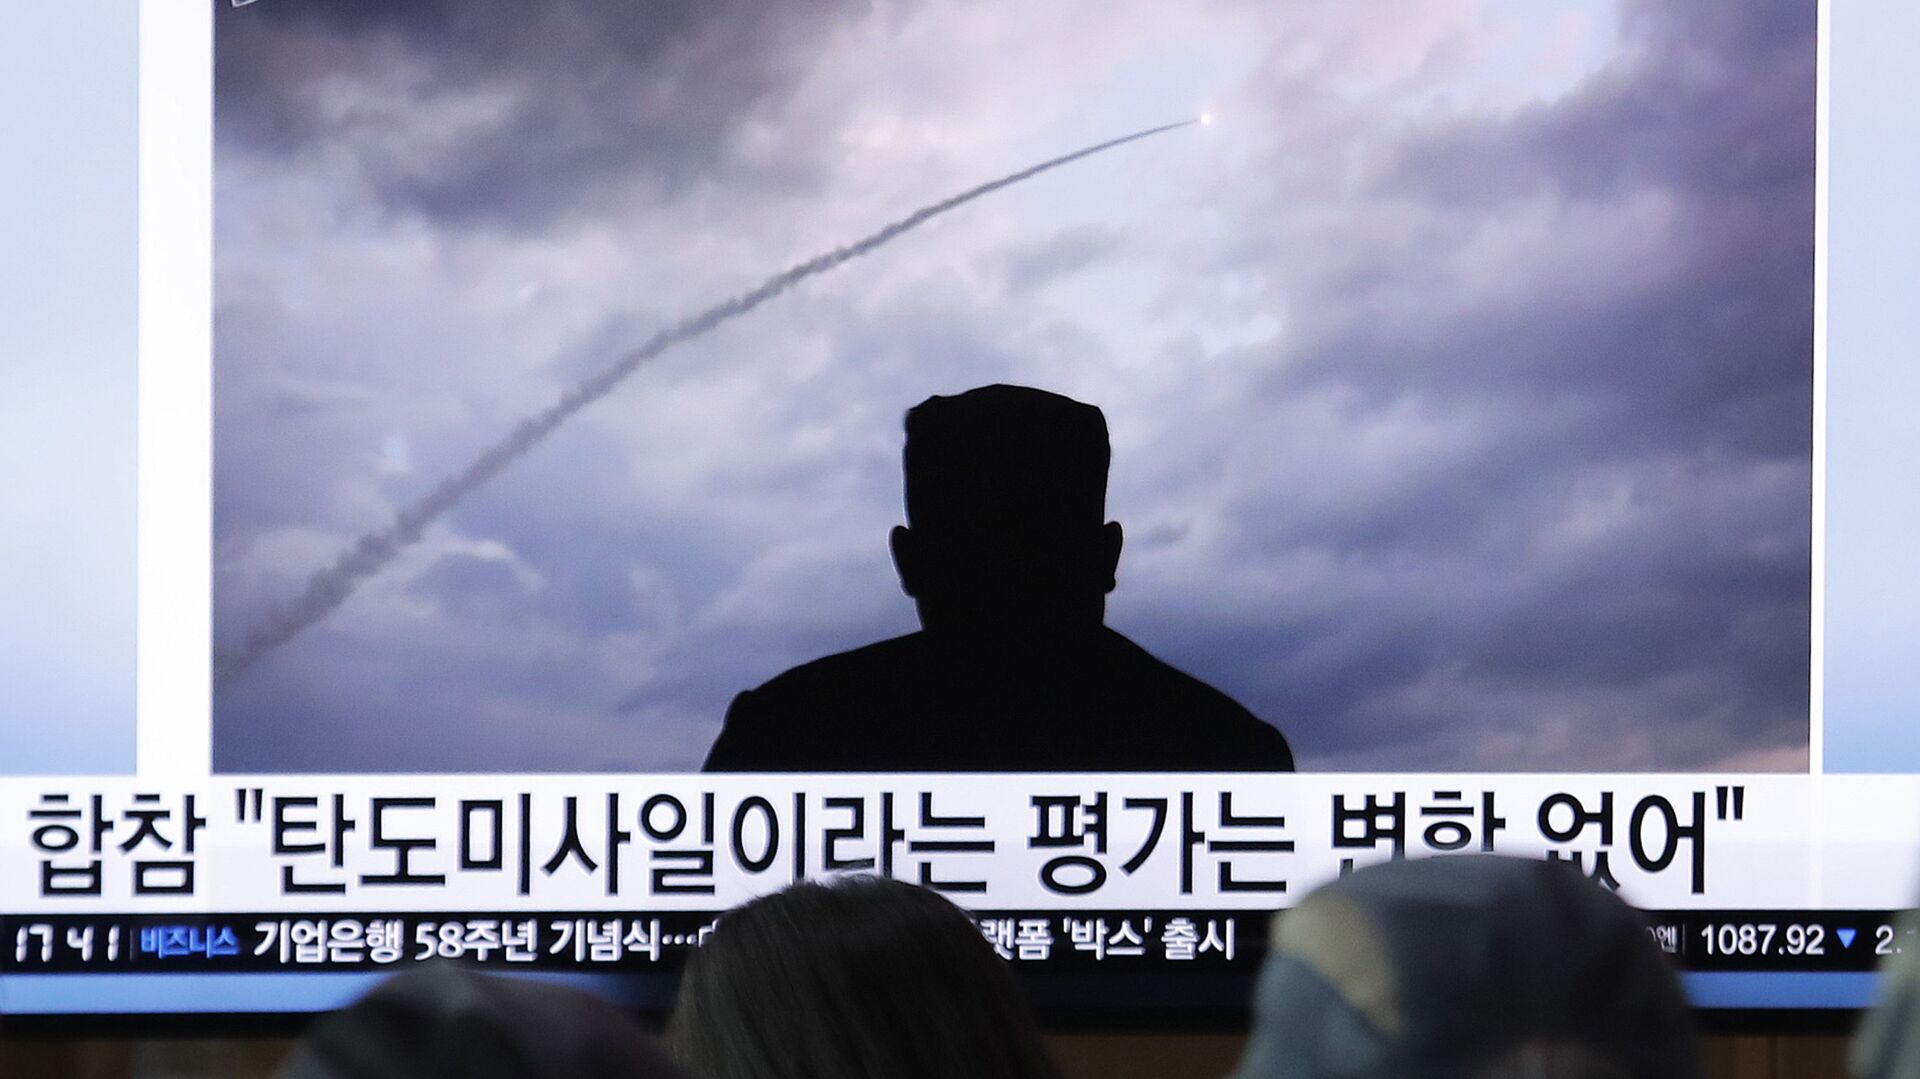 北朝鮮が前日に弾道ミサイル2発を発射する訓練実施＝韓国メディア - Sputnik 日本, 1920, 15.03.2023